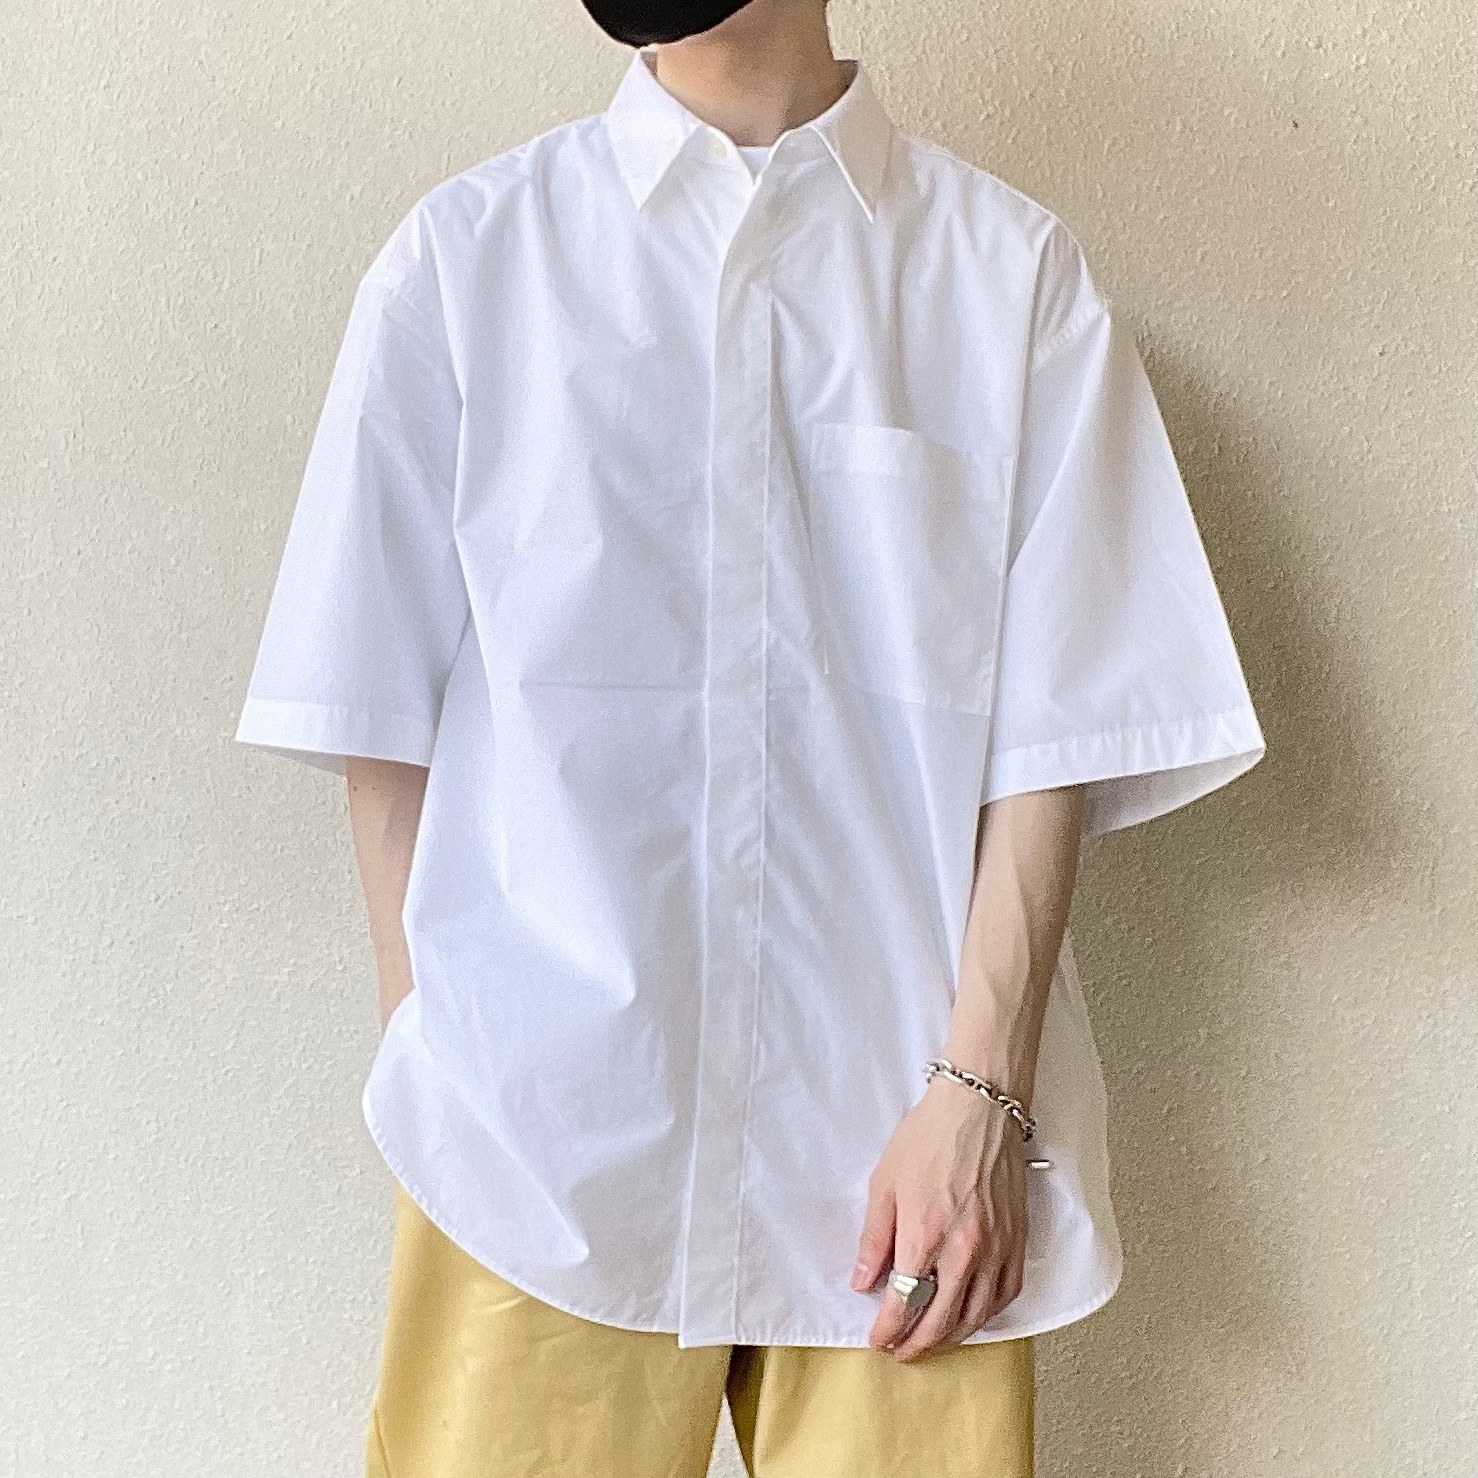 ☆GU（ジーユー）の新作メンズアイテム「ブロードオーバーサイズシャツ（5分袖）」キレイめアイテムで夏コーデにおすすめ